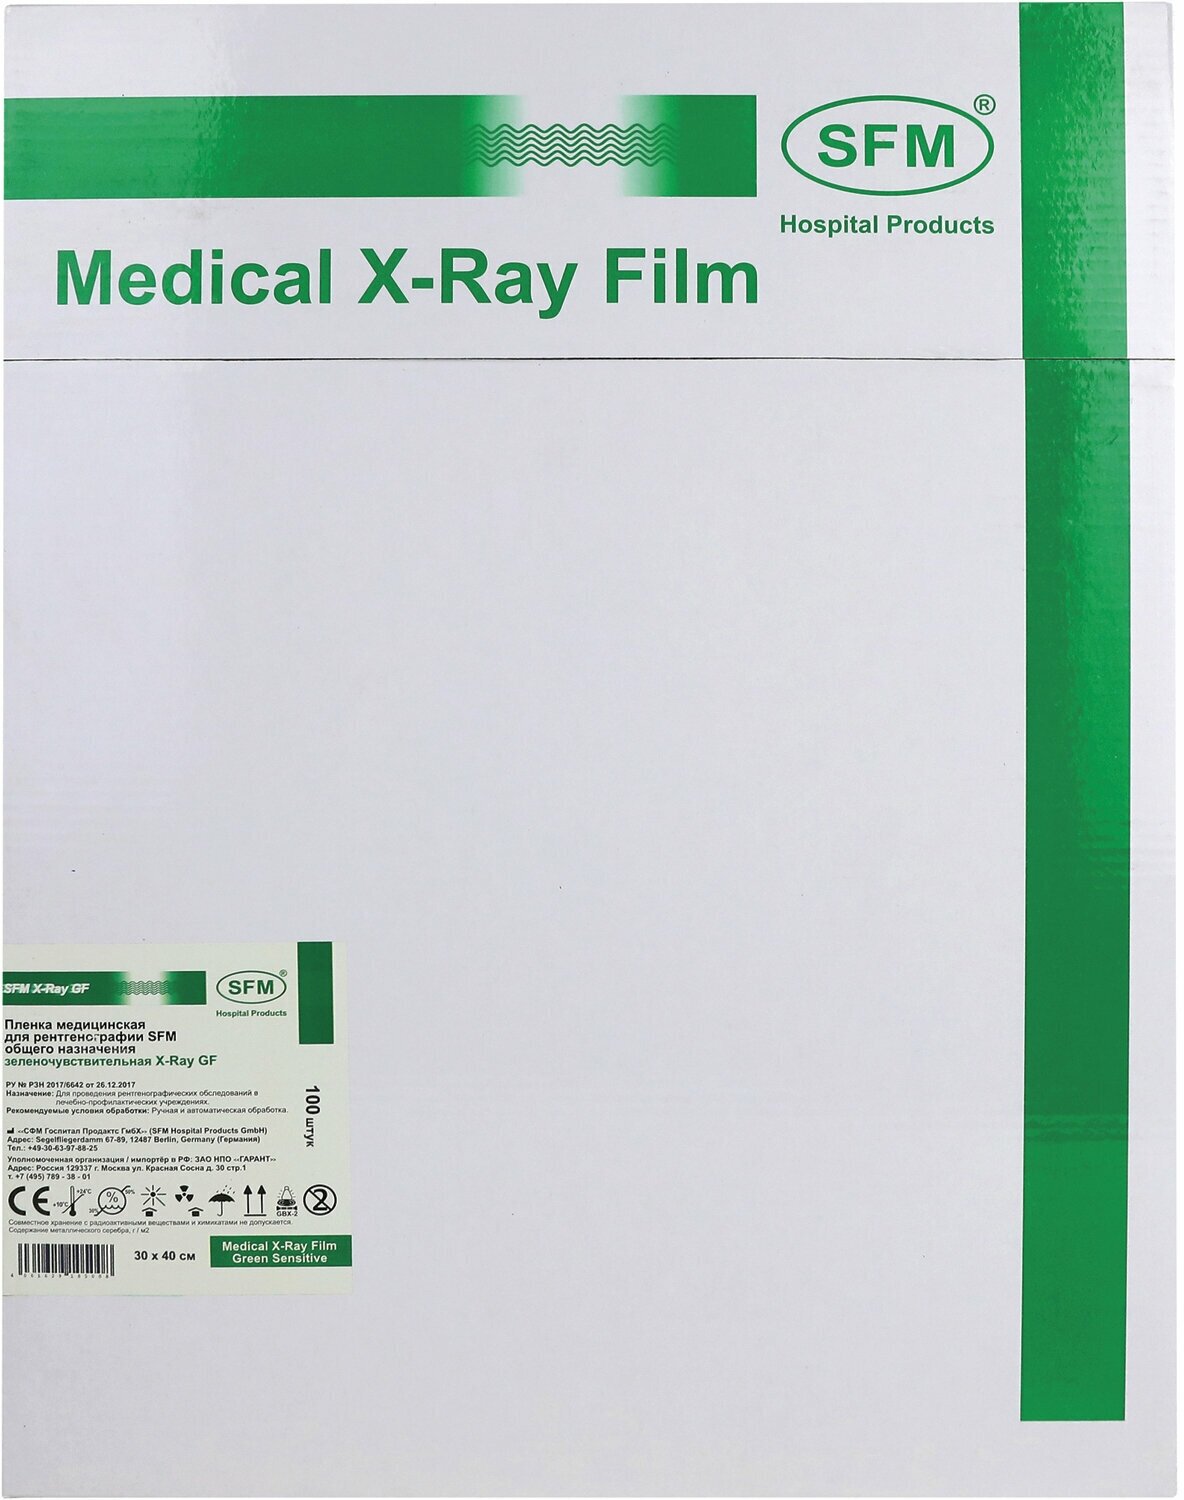 Пленка медицинская для рентгенографии SFM общего назначения зеленочувствительная X-Ray GF, 30 х 40 см (100 листов)